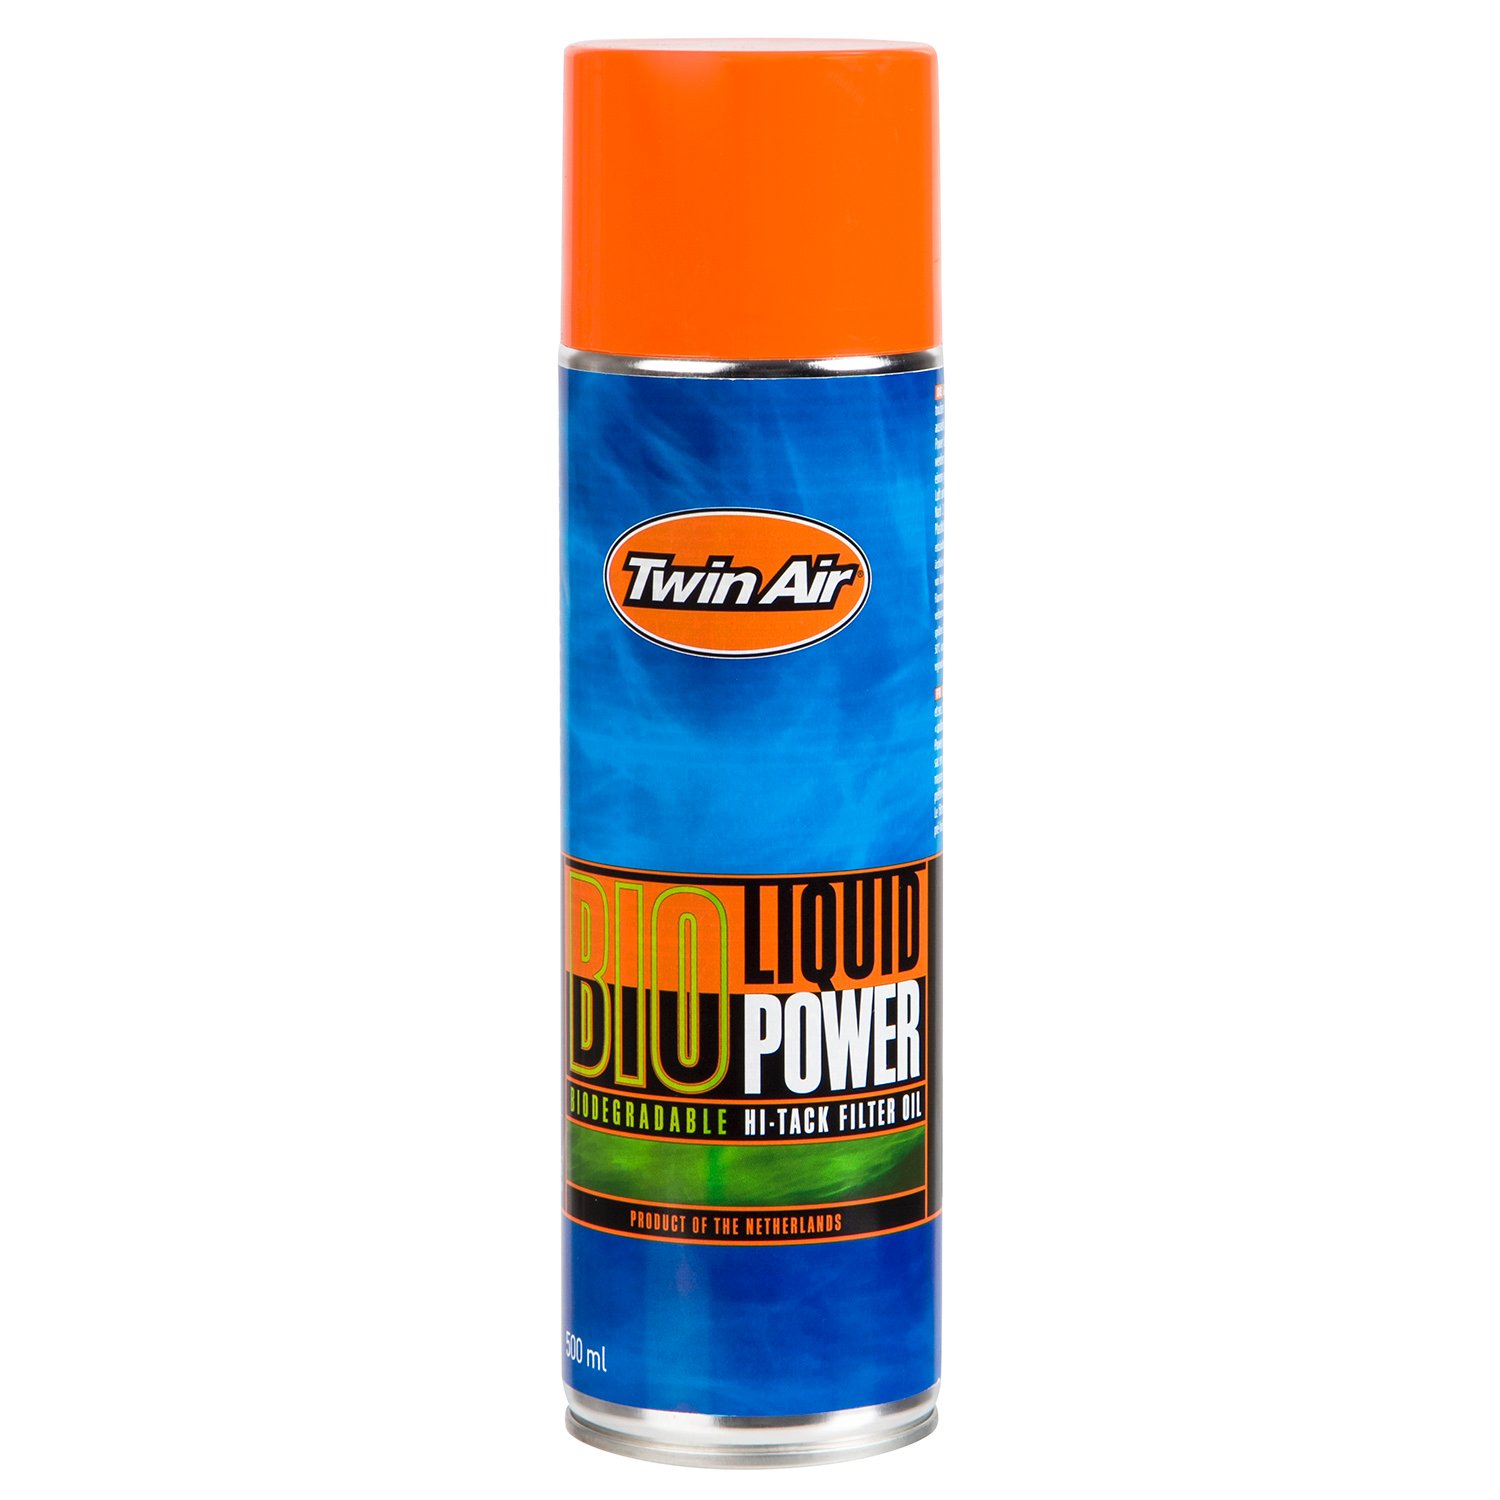 Twin Air Air Filter Spray Liquid Power Bio, 500 ml